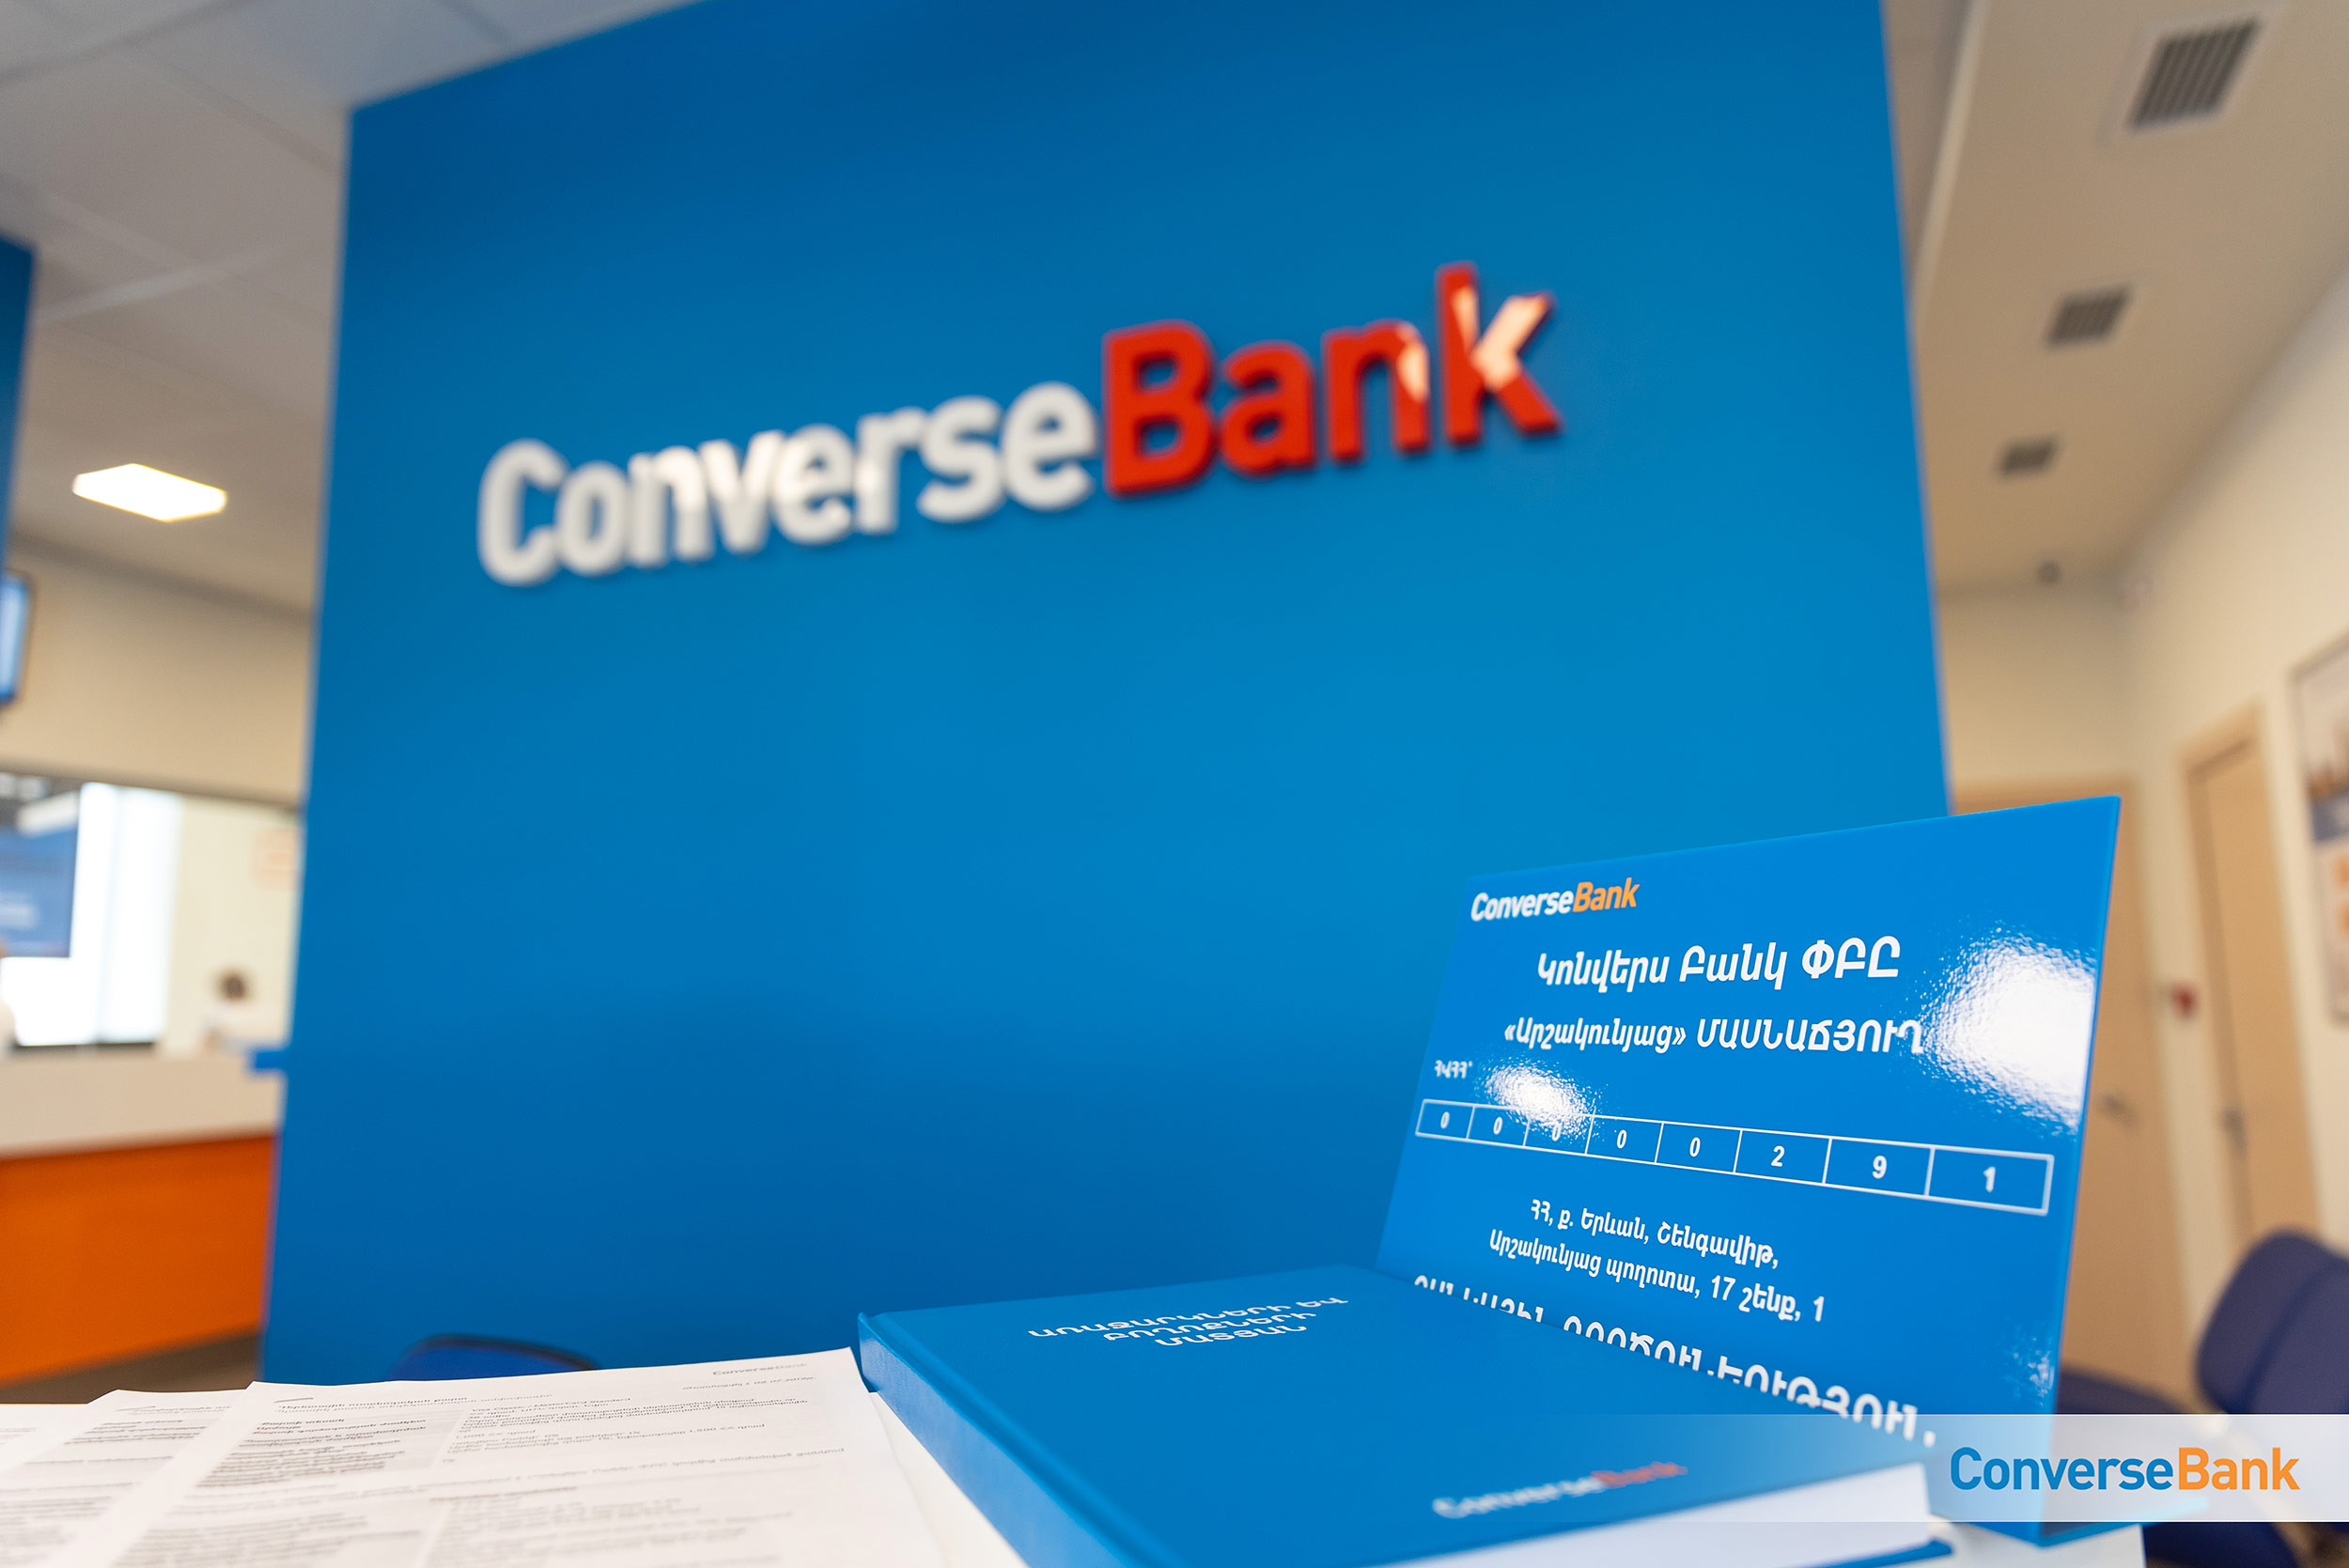 Конверс Банк открыл новый филиал “Аршакуняц” в одном из оживленных частей Еревана 2